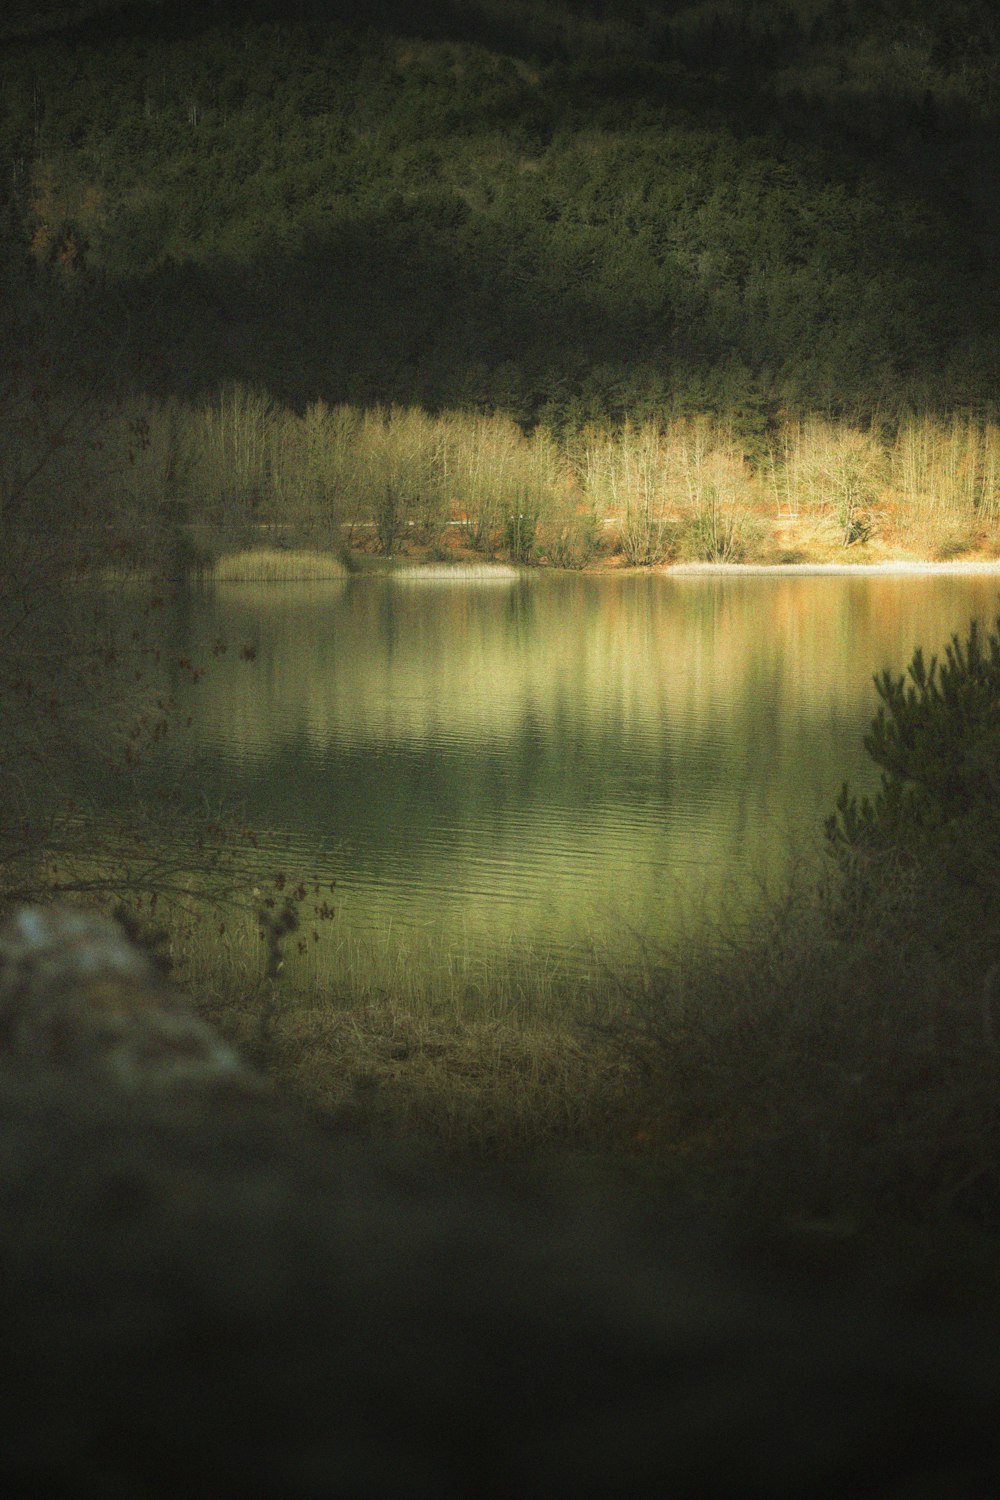 uno specchio d'acqua circondato da una foresta